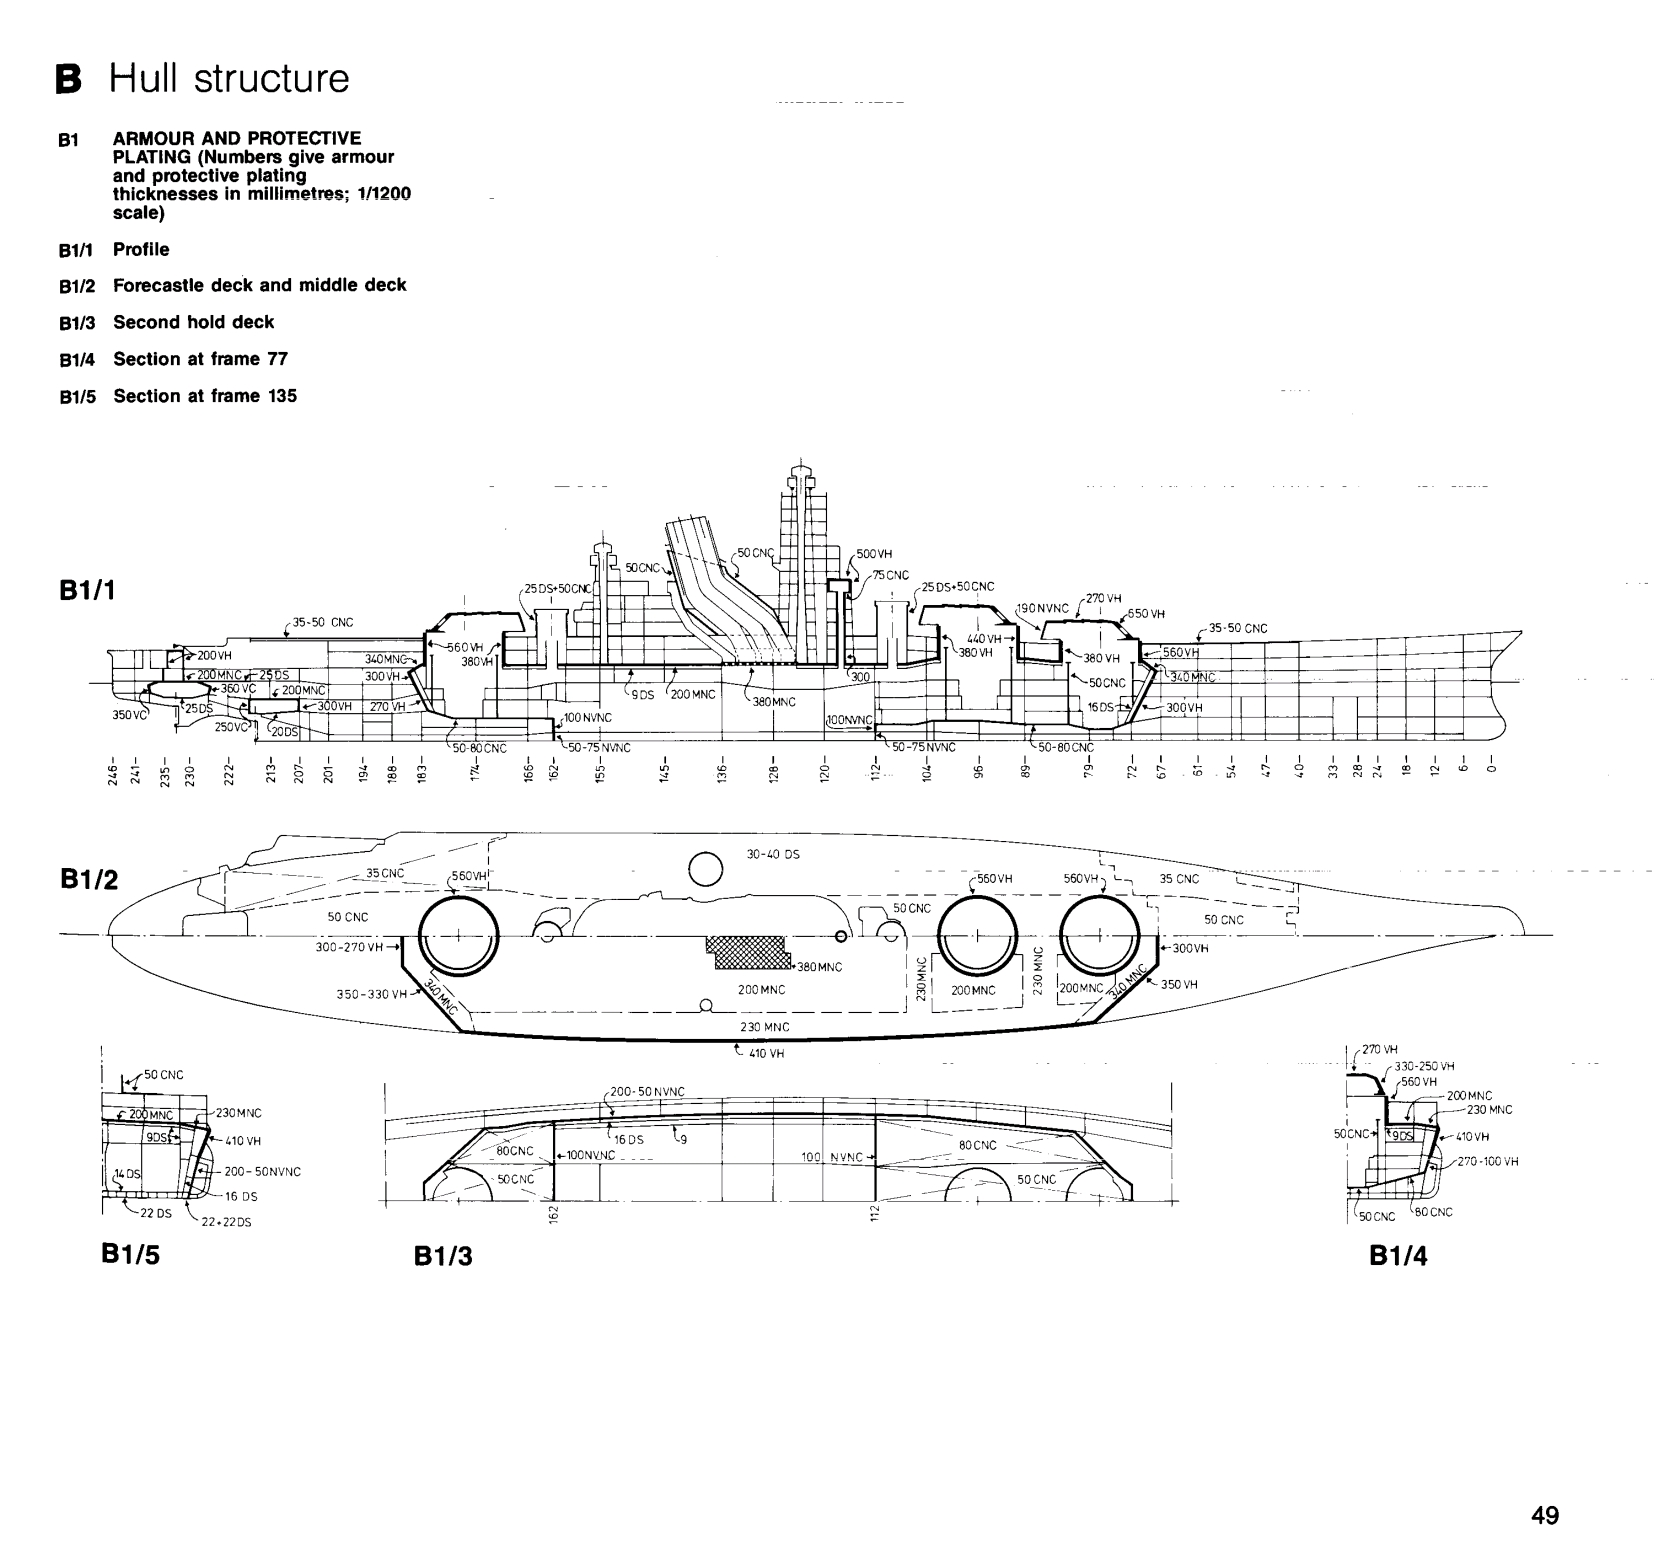 二战战舰设计图纸图片